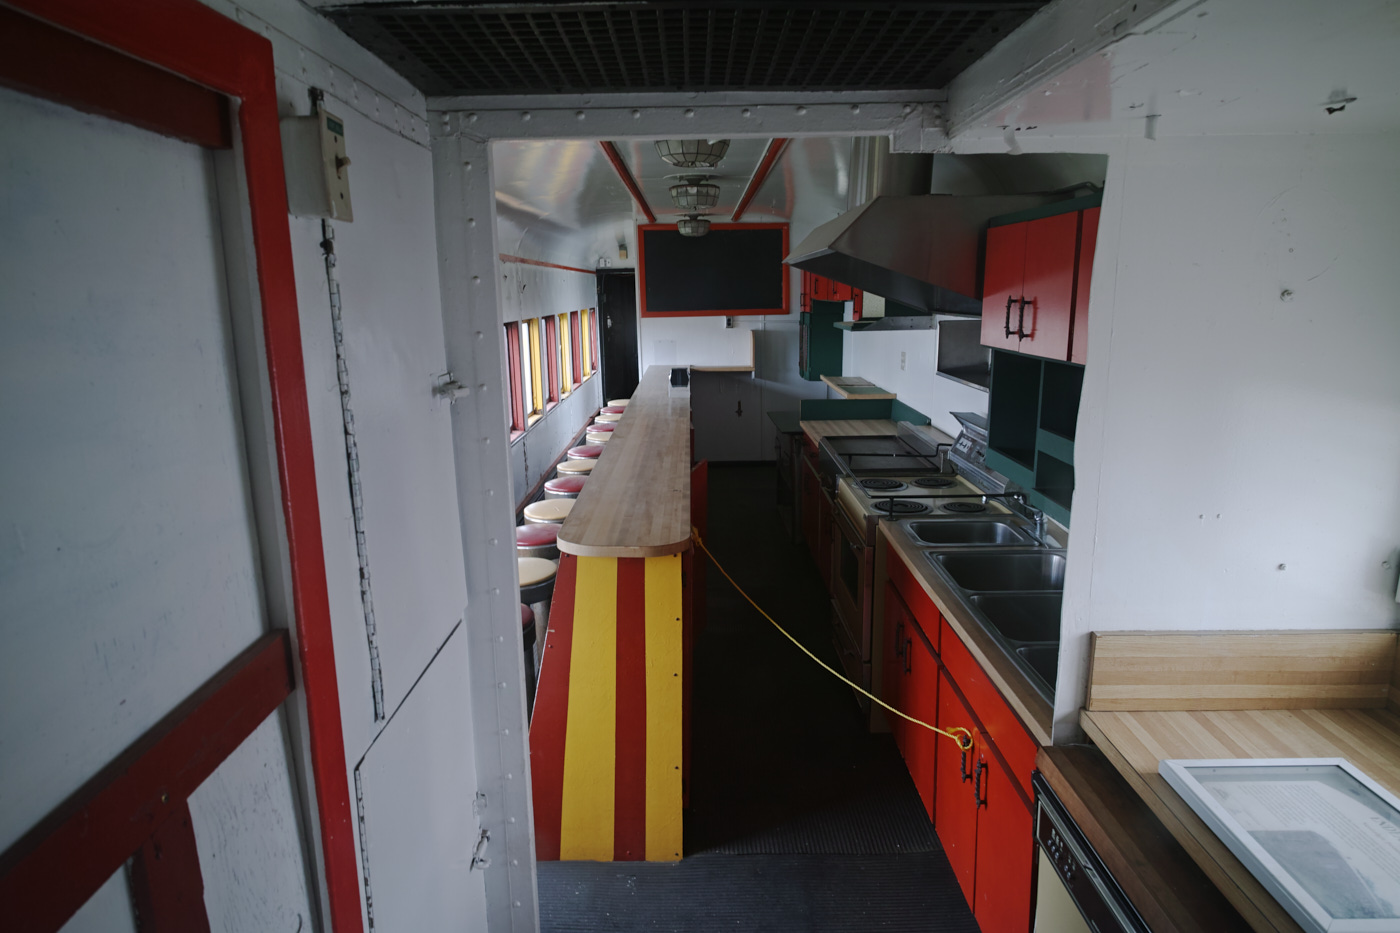 Inside a vintage dining car!